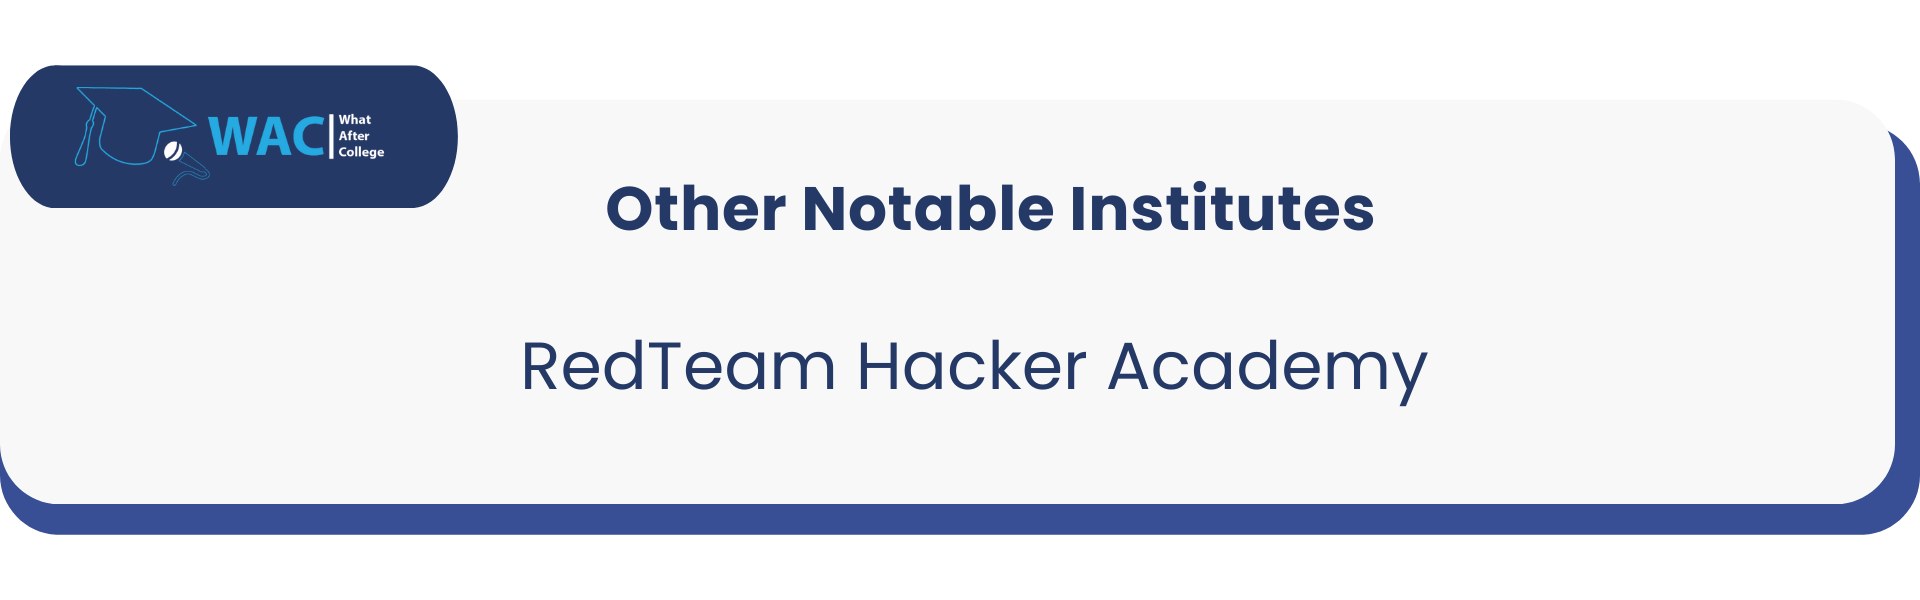 Other: 2 RedTeam Hacker Academy